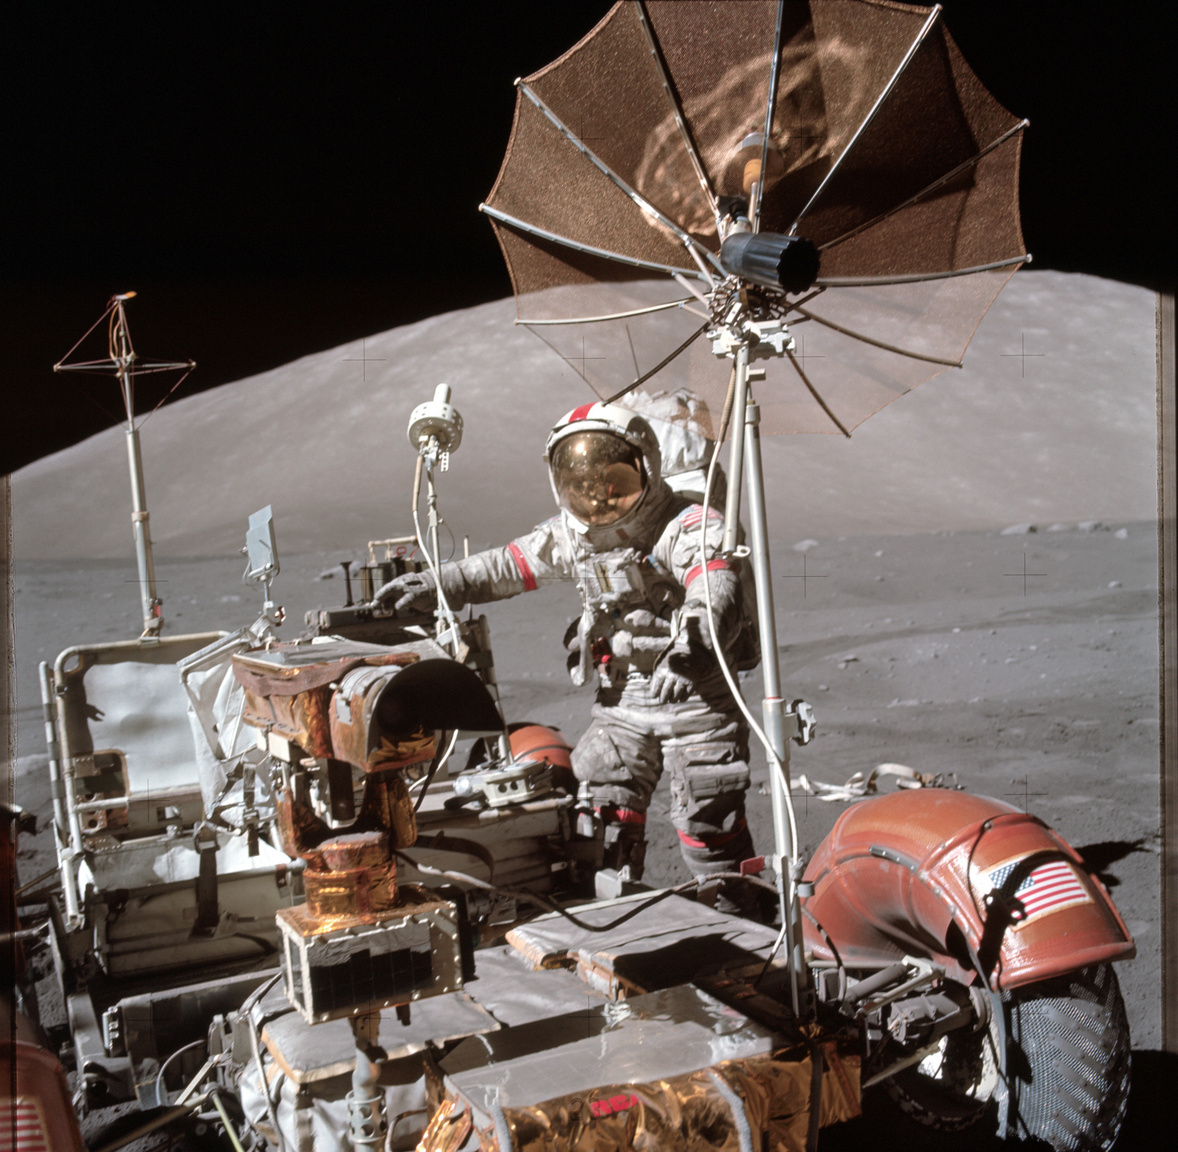 Az Apollo-17 parancsnoka, Eugene Cernan a leparkolt holdjáró mellett. A képet több helyen is érdemes tüzetesebben megnézni. A bal sarokban látszik, ahogy a hátsó kerék sárvédője megtört és térképeket odaragasztva küszöbölték ki a csorbát az űrhajósok. Cernan ruhája valamennyire beszürkült a Hold felszínéről ráragadt portól, többek között ezért is volt fontos része a holdjárónak sárhányó: a fehér ruhára rakódó sötét por rontotta a hőálló képességeit a szkafandernek, ezzel veszélyeztetve az asztronauták életét. A harmadik érdekesség ami jól megfigyelhető a képen, az a titánhálóból készült kerék.
                        